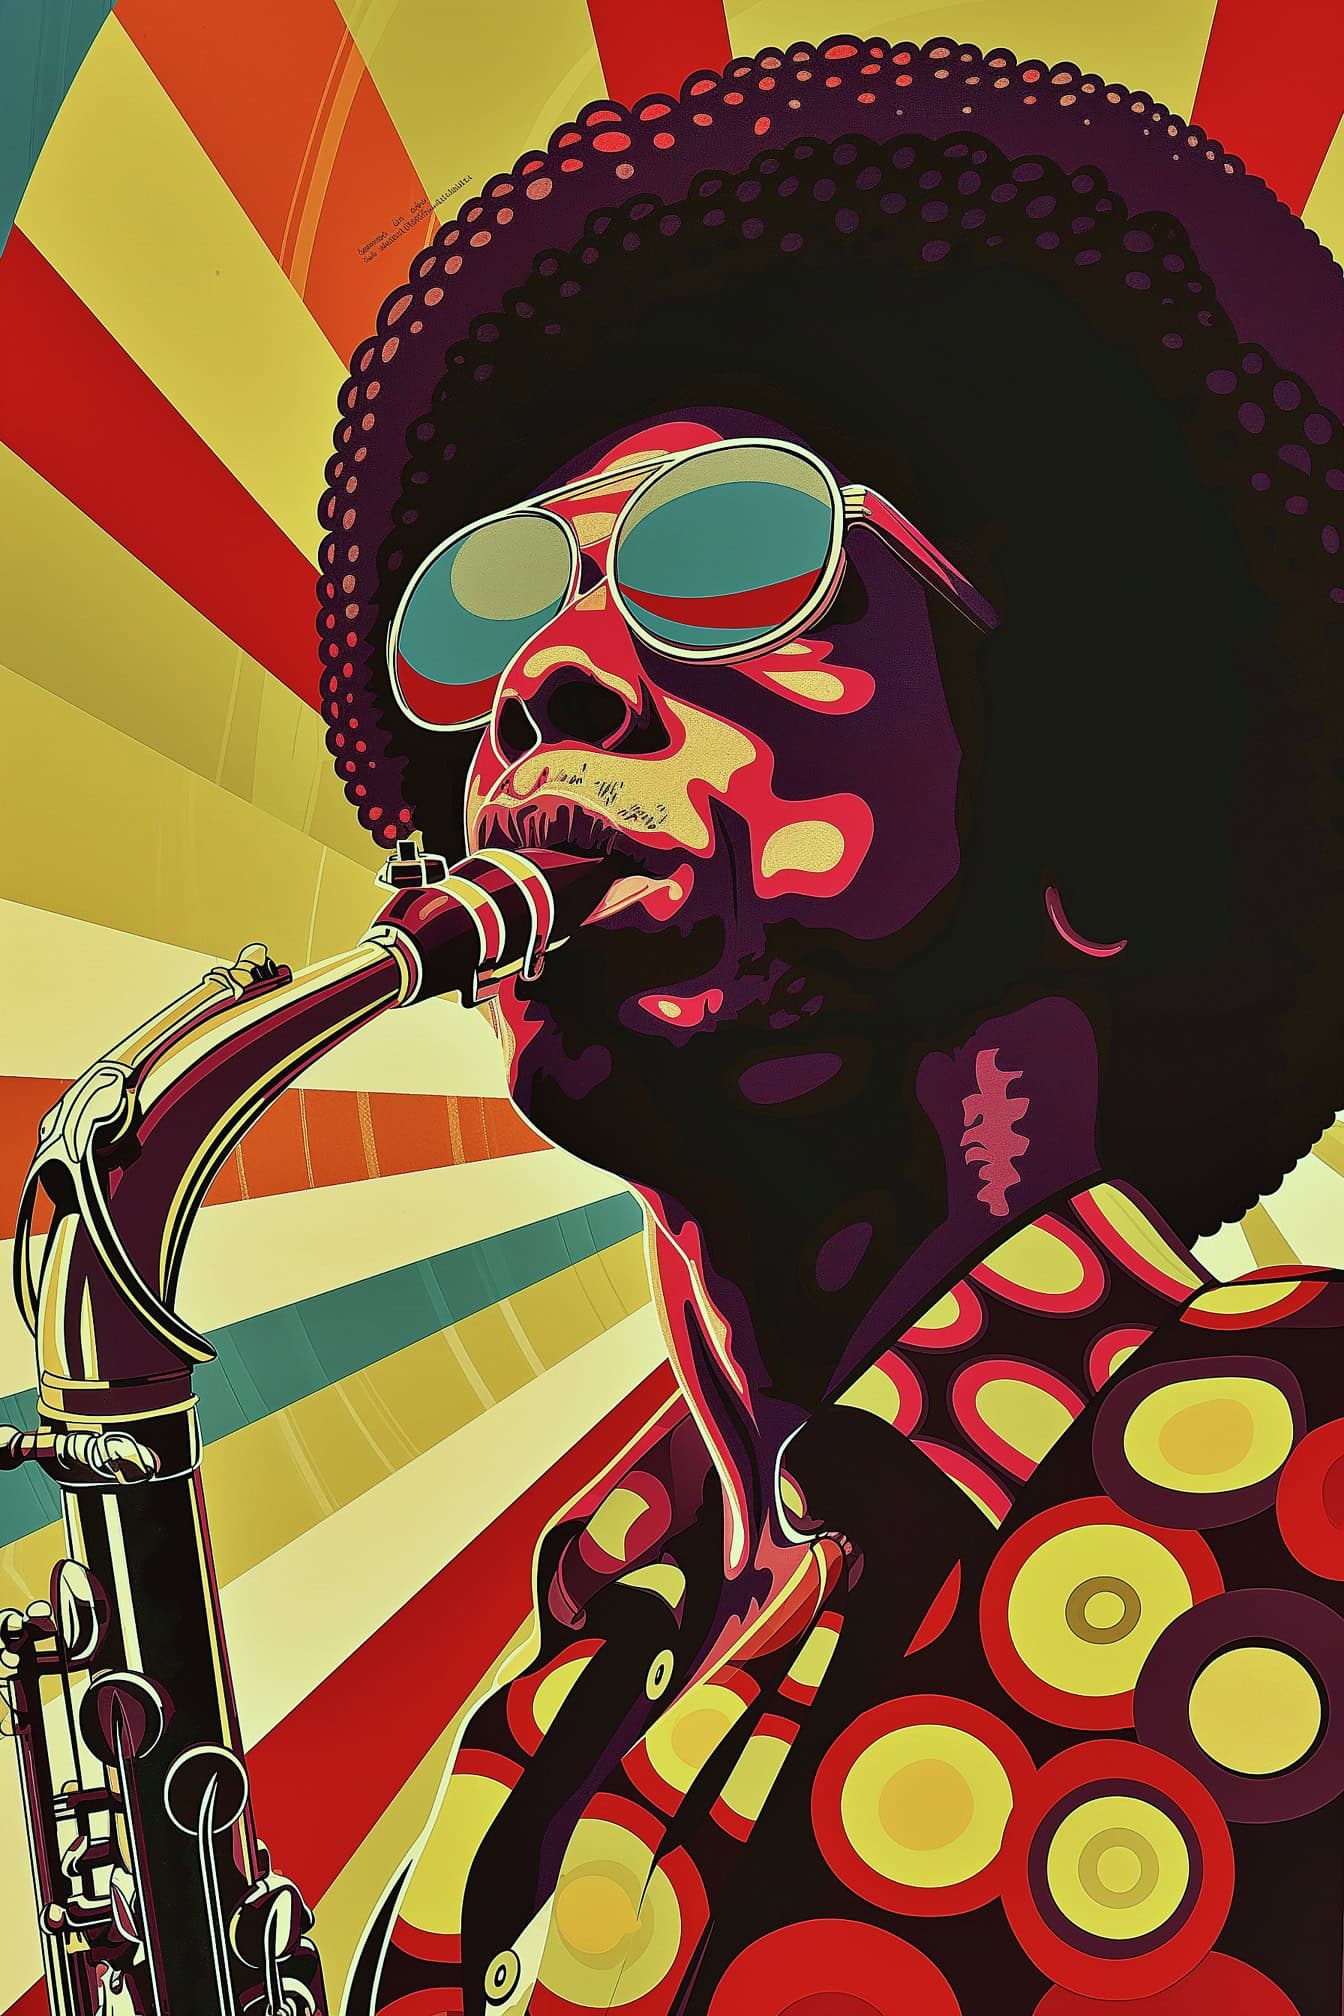 Um pôster de estilo retrô de um músico de jazz afro-americano com um corte de cabelo afro usando óculos escuros e tocando saxofone